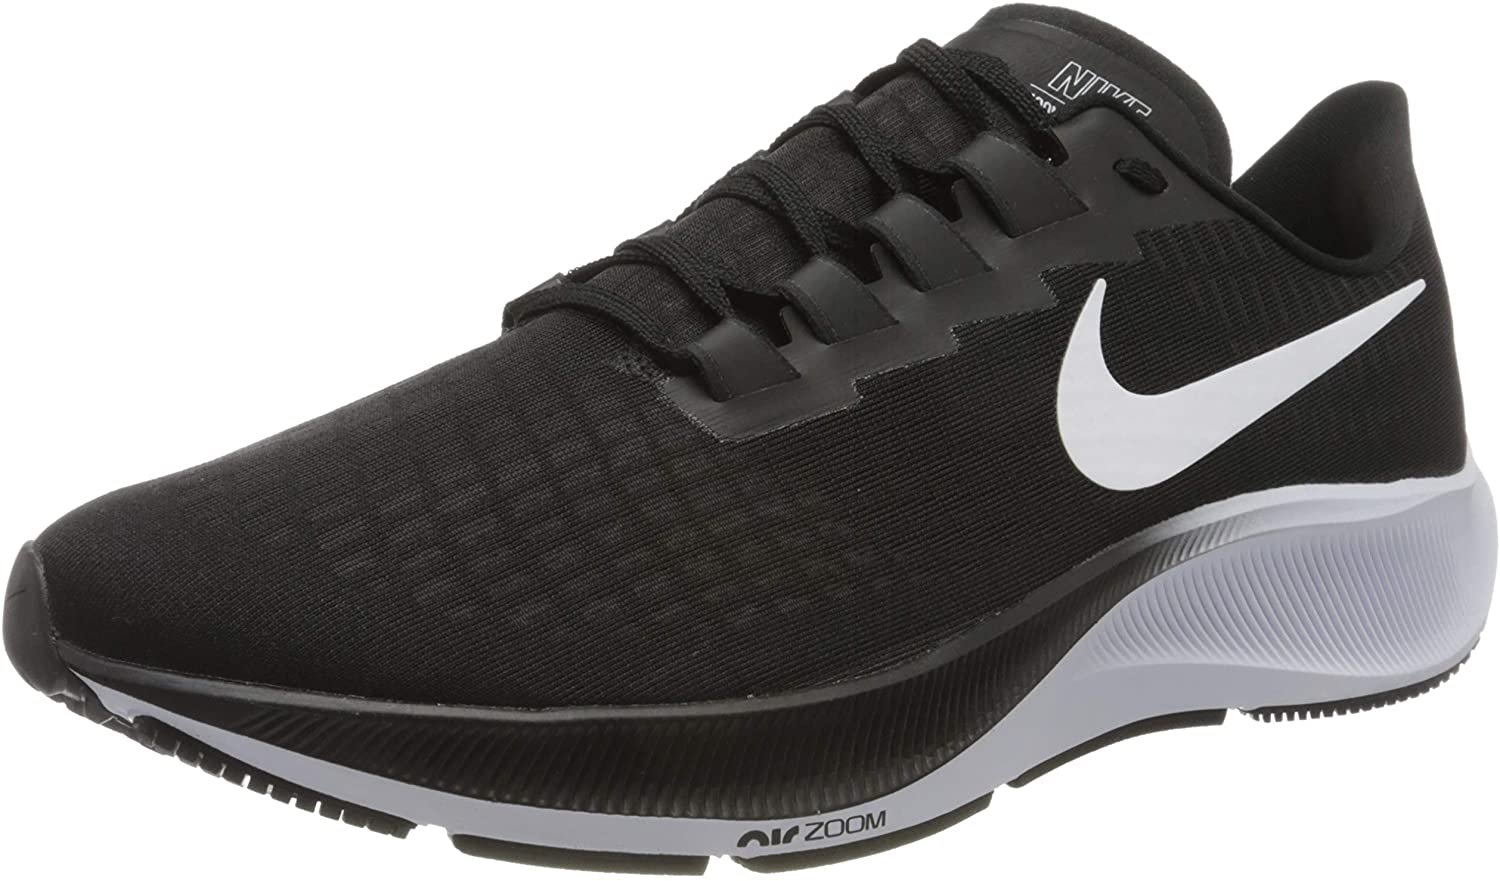 Nike Air Zoom Pegasus 37 Mens Running Casual Shoe Bq9646-002 Size 11.5 Black/White - image 1 of 7